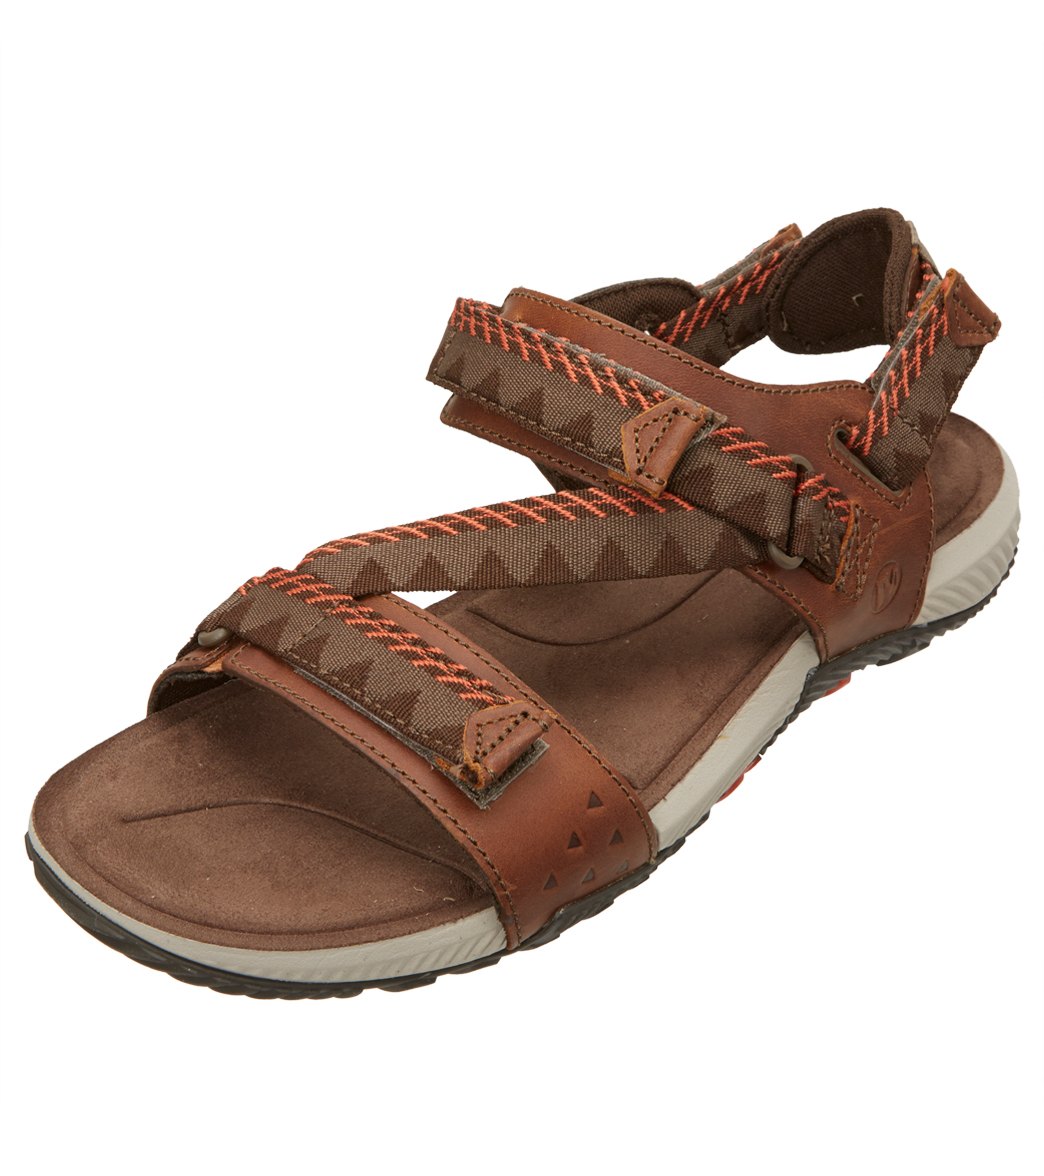 Merrell Men's Terrant Convertible Sandals - Brown Sugar 11 - Swimoutlet.com